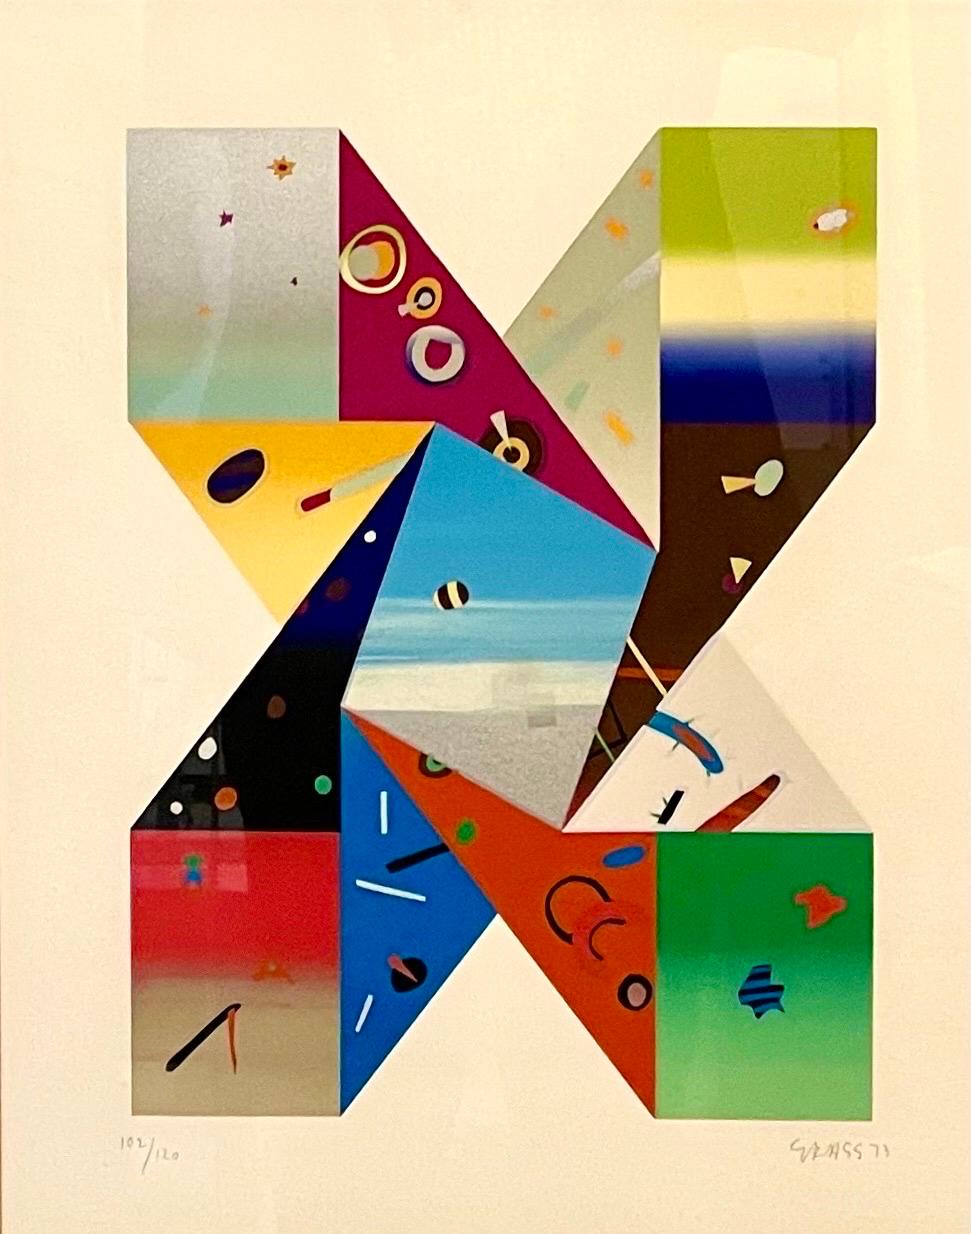 Deborah Kass (geboren 1952)
Limitierte Auflage einer abstrakten geometrischen Lithographie in Farben auf Künstlerpapier. 
Handsigniert und datiert mit Bleistift unten rechts. 1973. 
Auflage: 102/120 unten links. 
Abmessungen: Visier: 16-3/4" B x